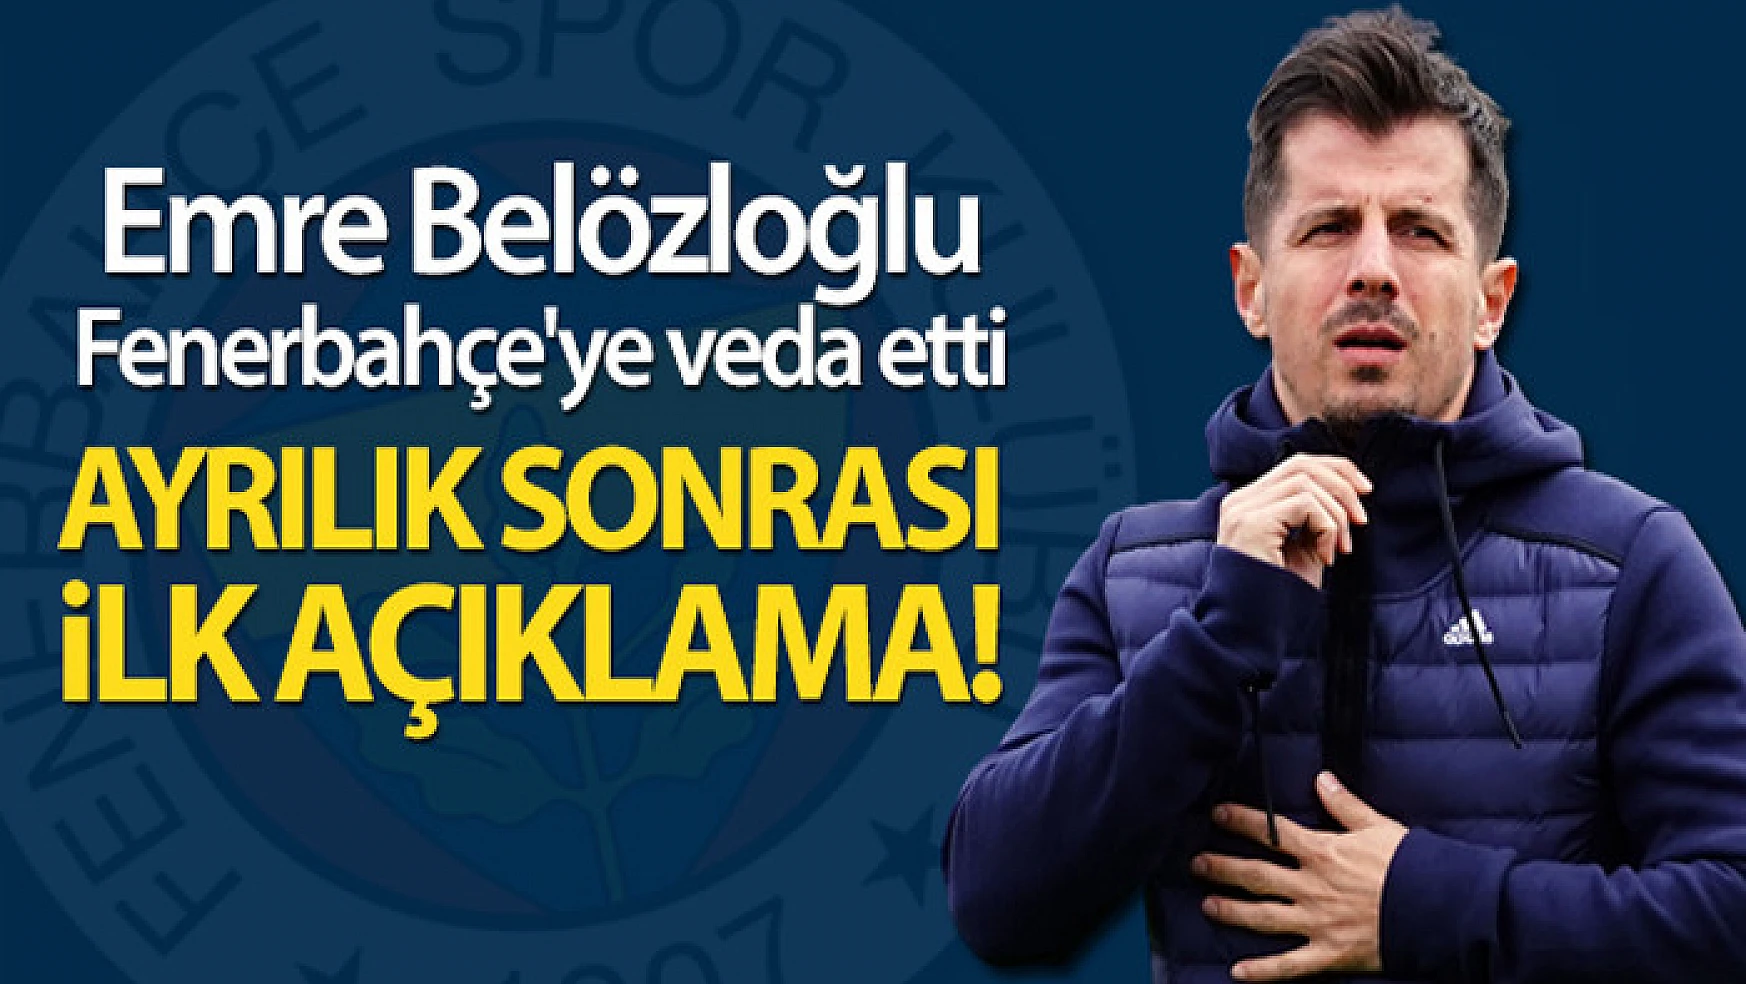 Emre Belözoğlu, Fenerbahçe'den ayrıldı